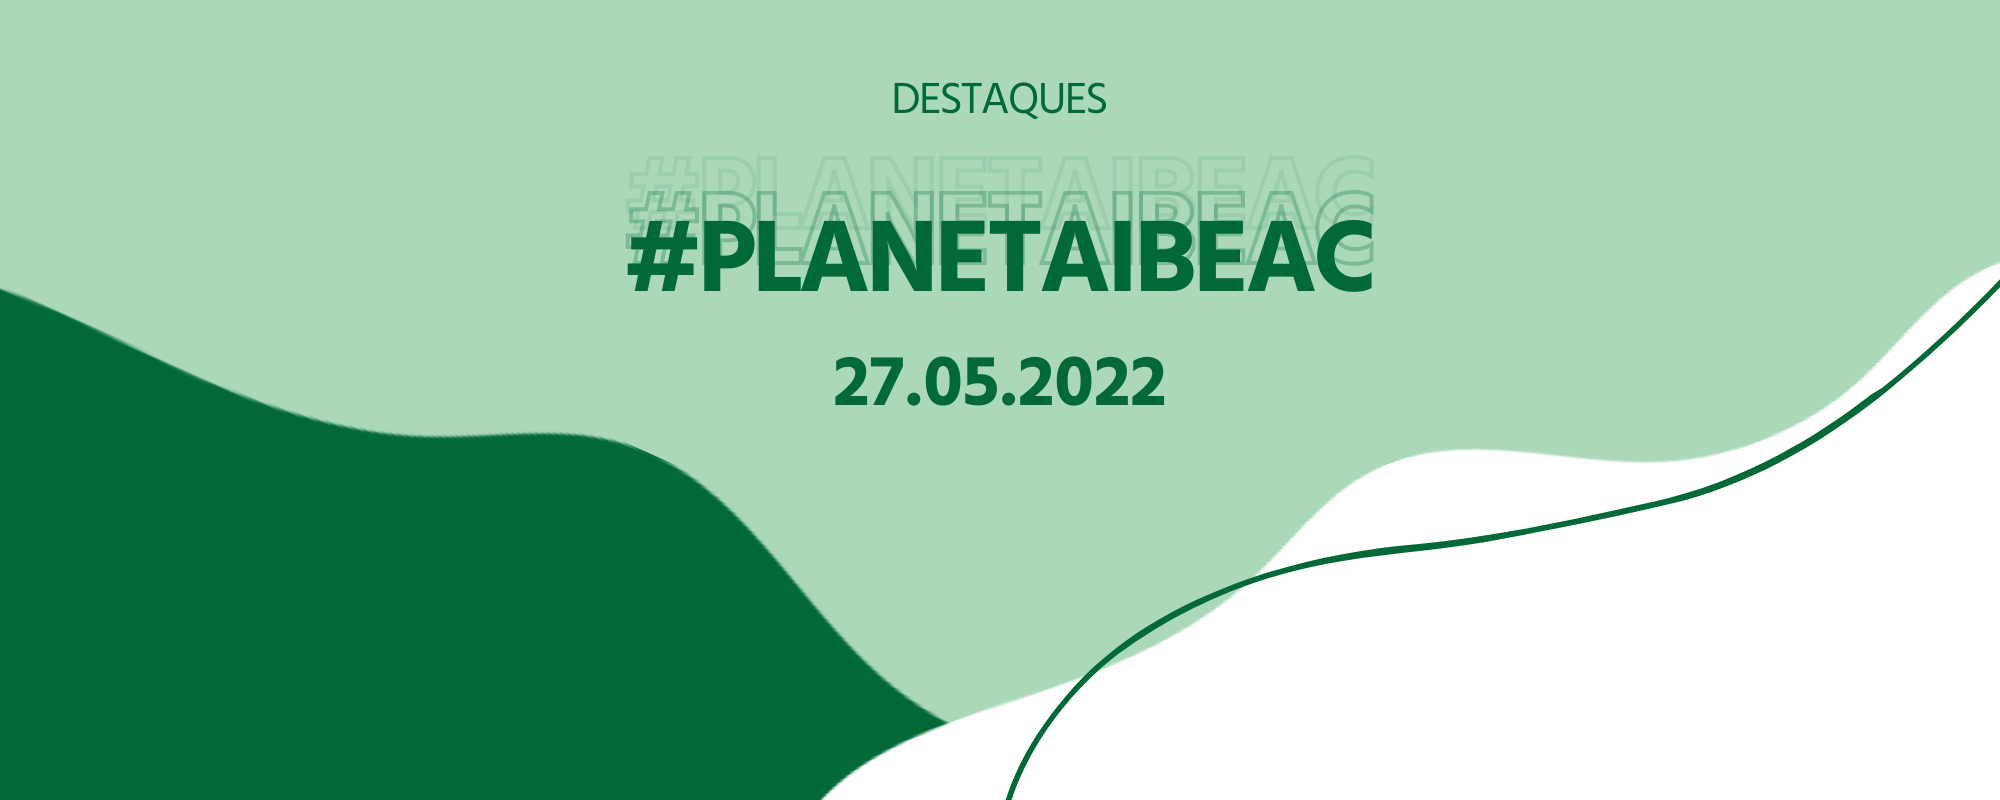 Destaques #PlanetaIbeac 27.05.2022